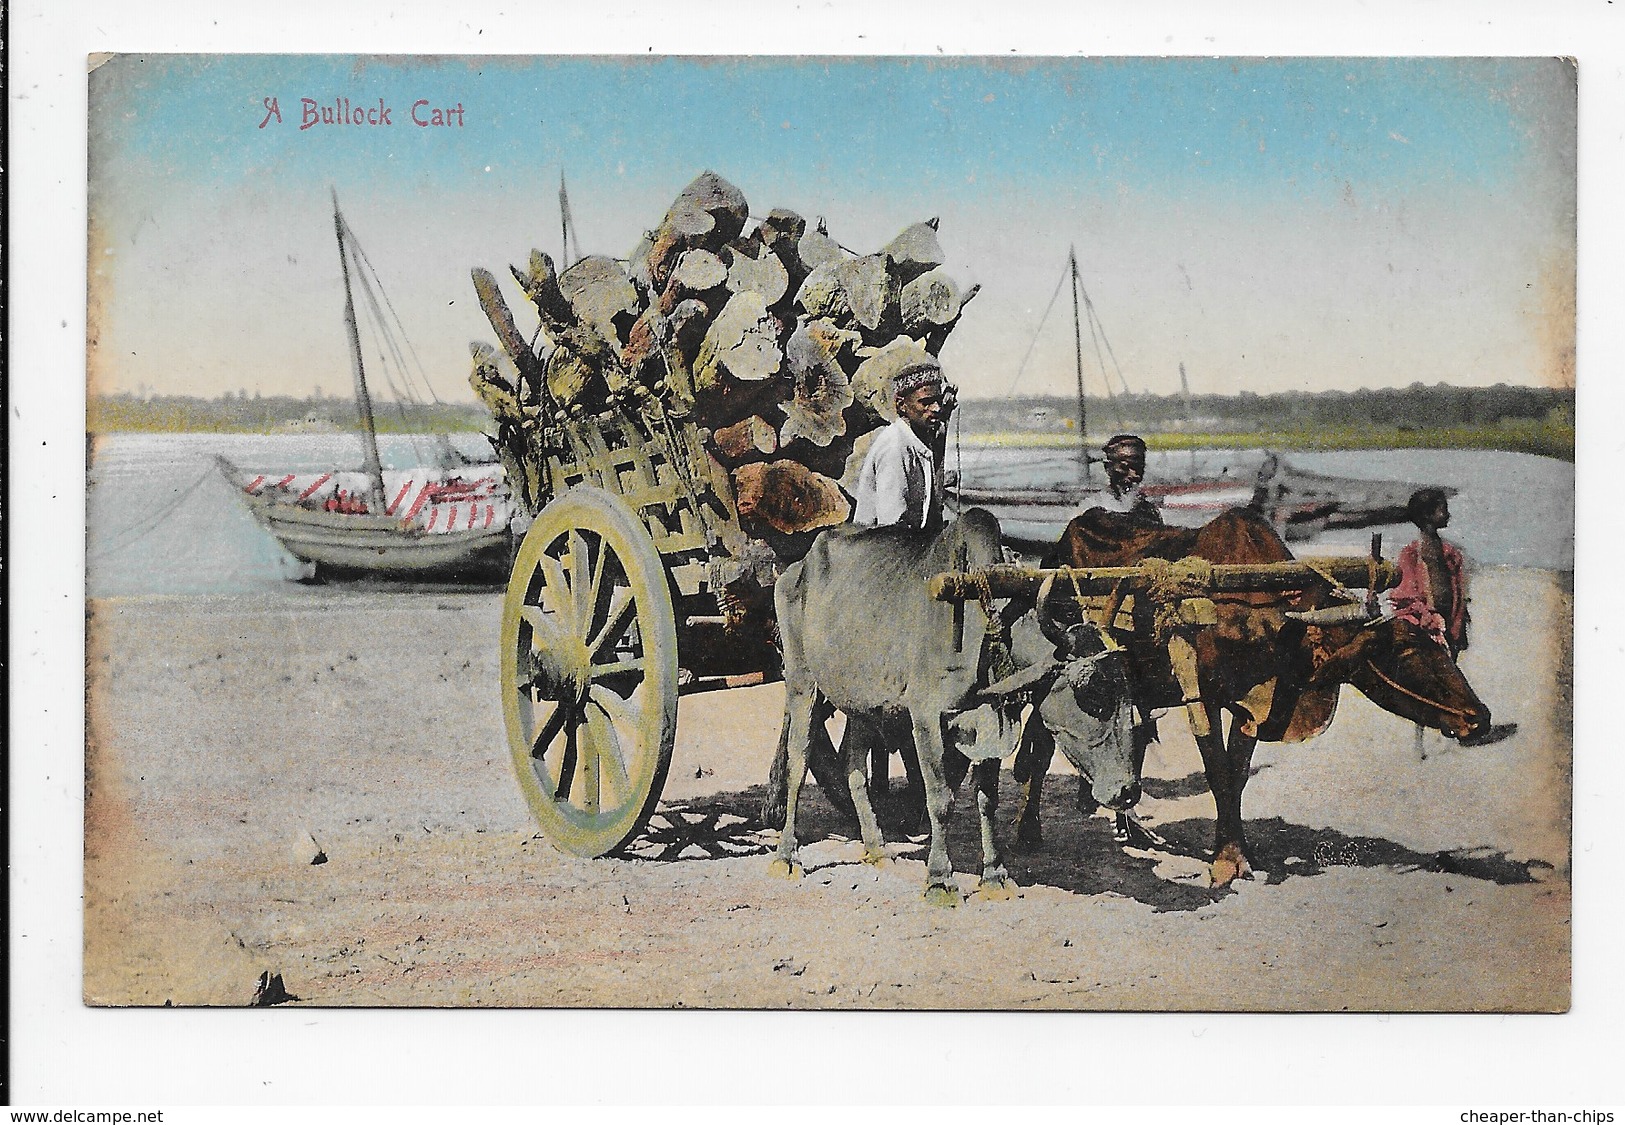 A Bullock Cart - India